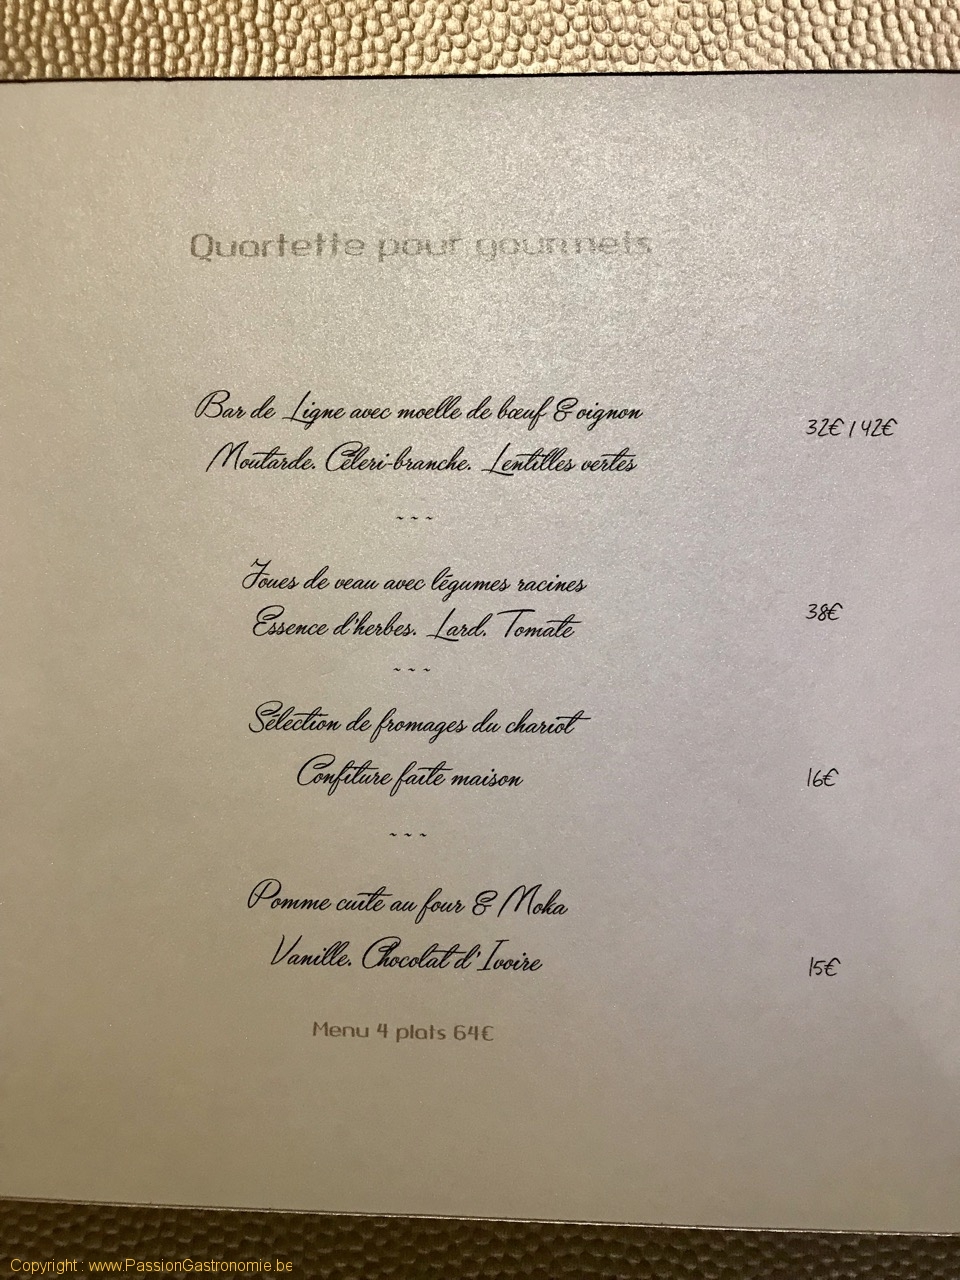 Restaurant Quadras - Le menu quartette pour gourmets